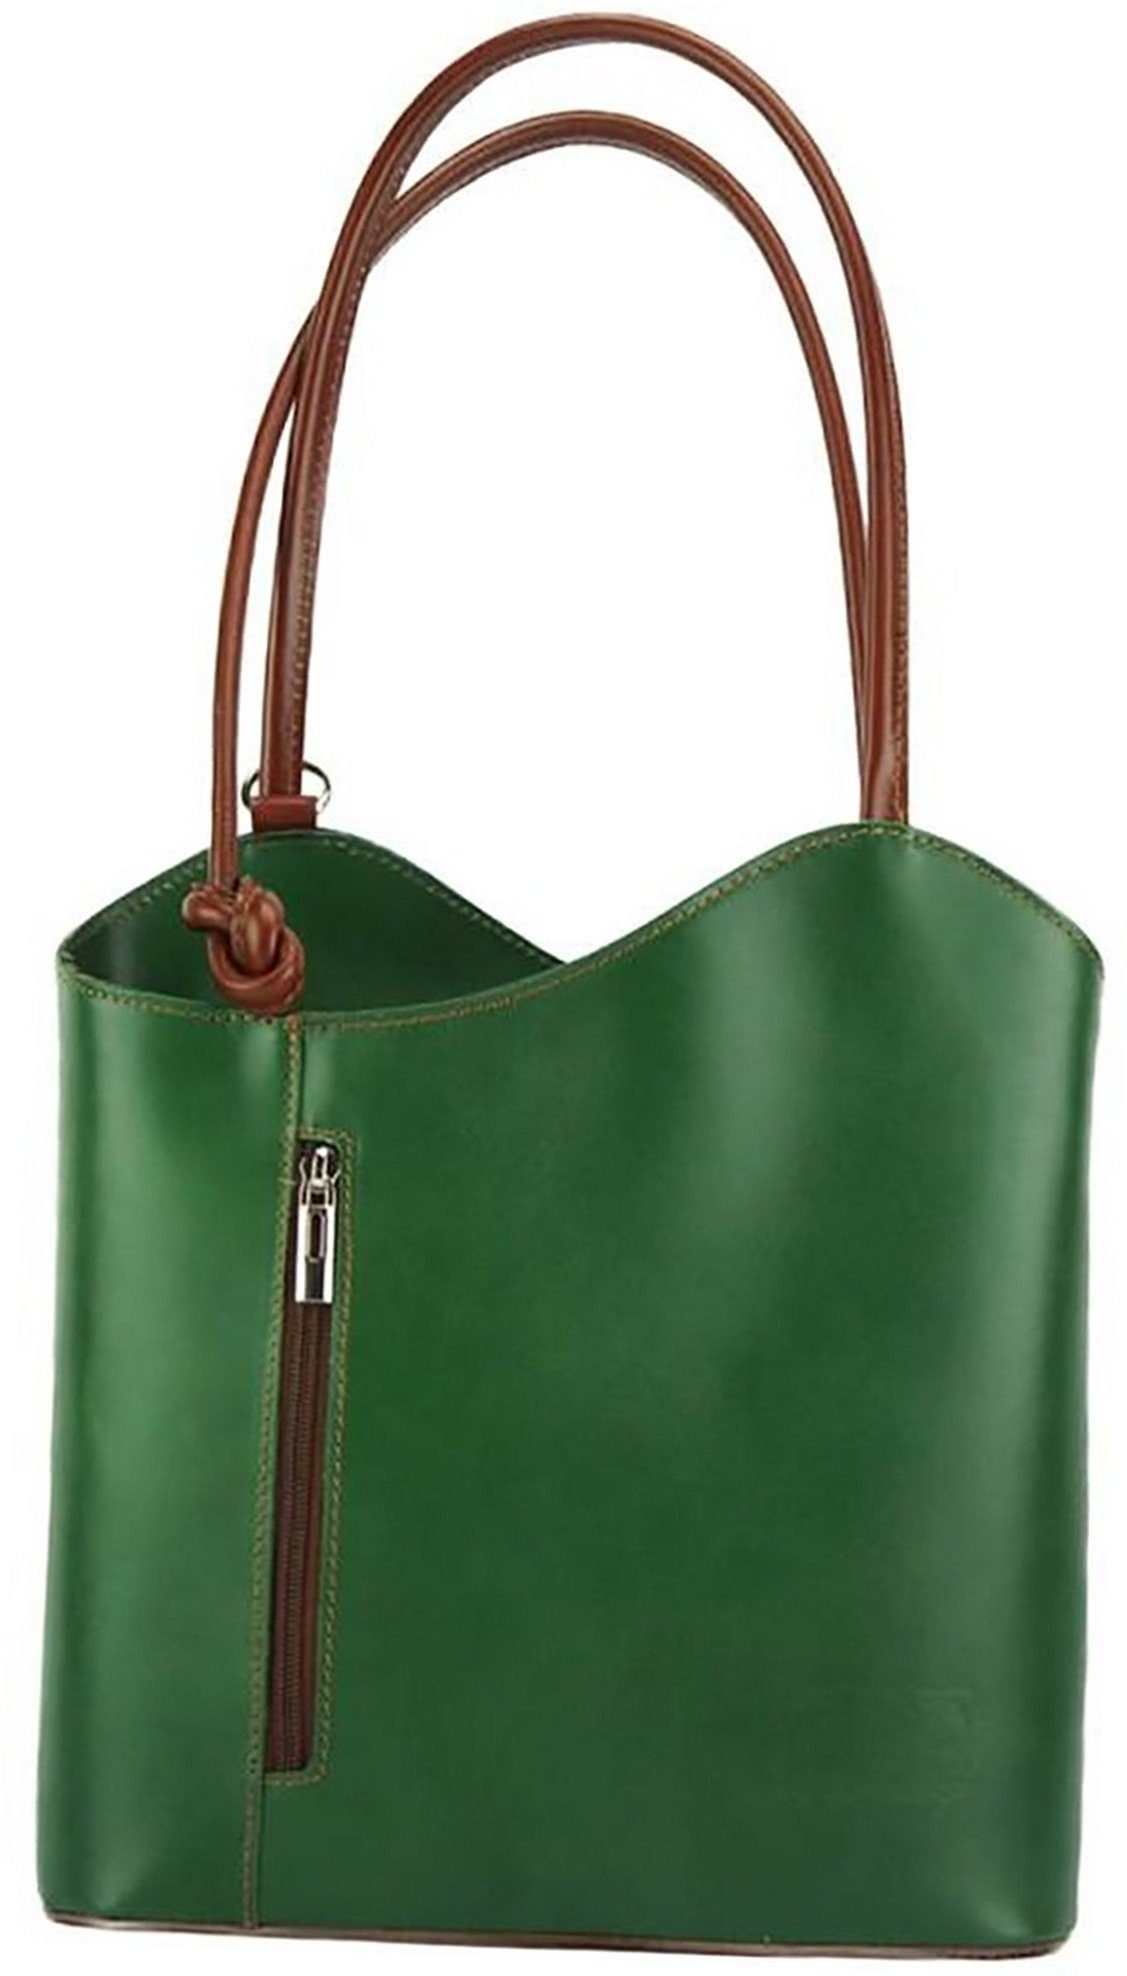 FLORENCE Schultertasche »Florence 2in1 Echtleder Damen Handtasche«, Damen  Tasche aus Echtleder in grün, braun, ca. 28cm Breite, Made-In Italy